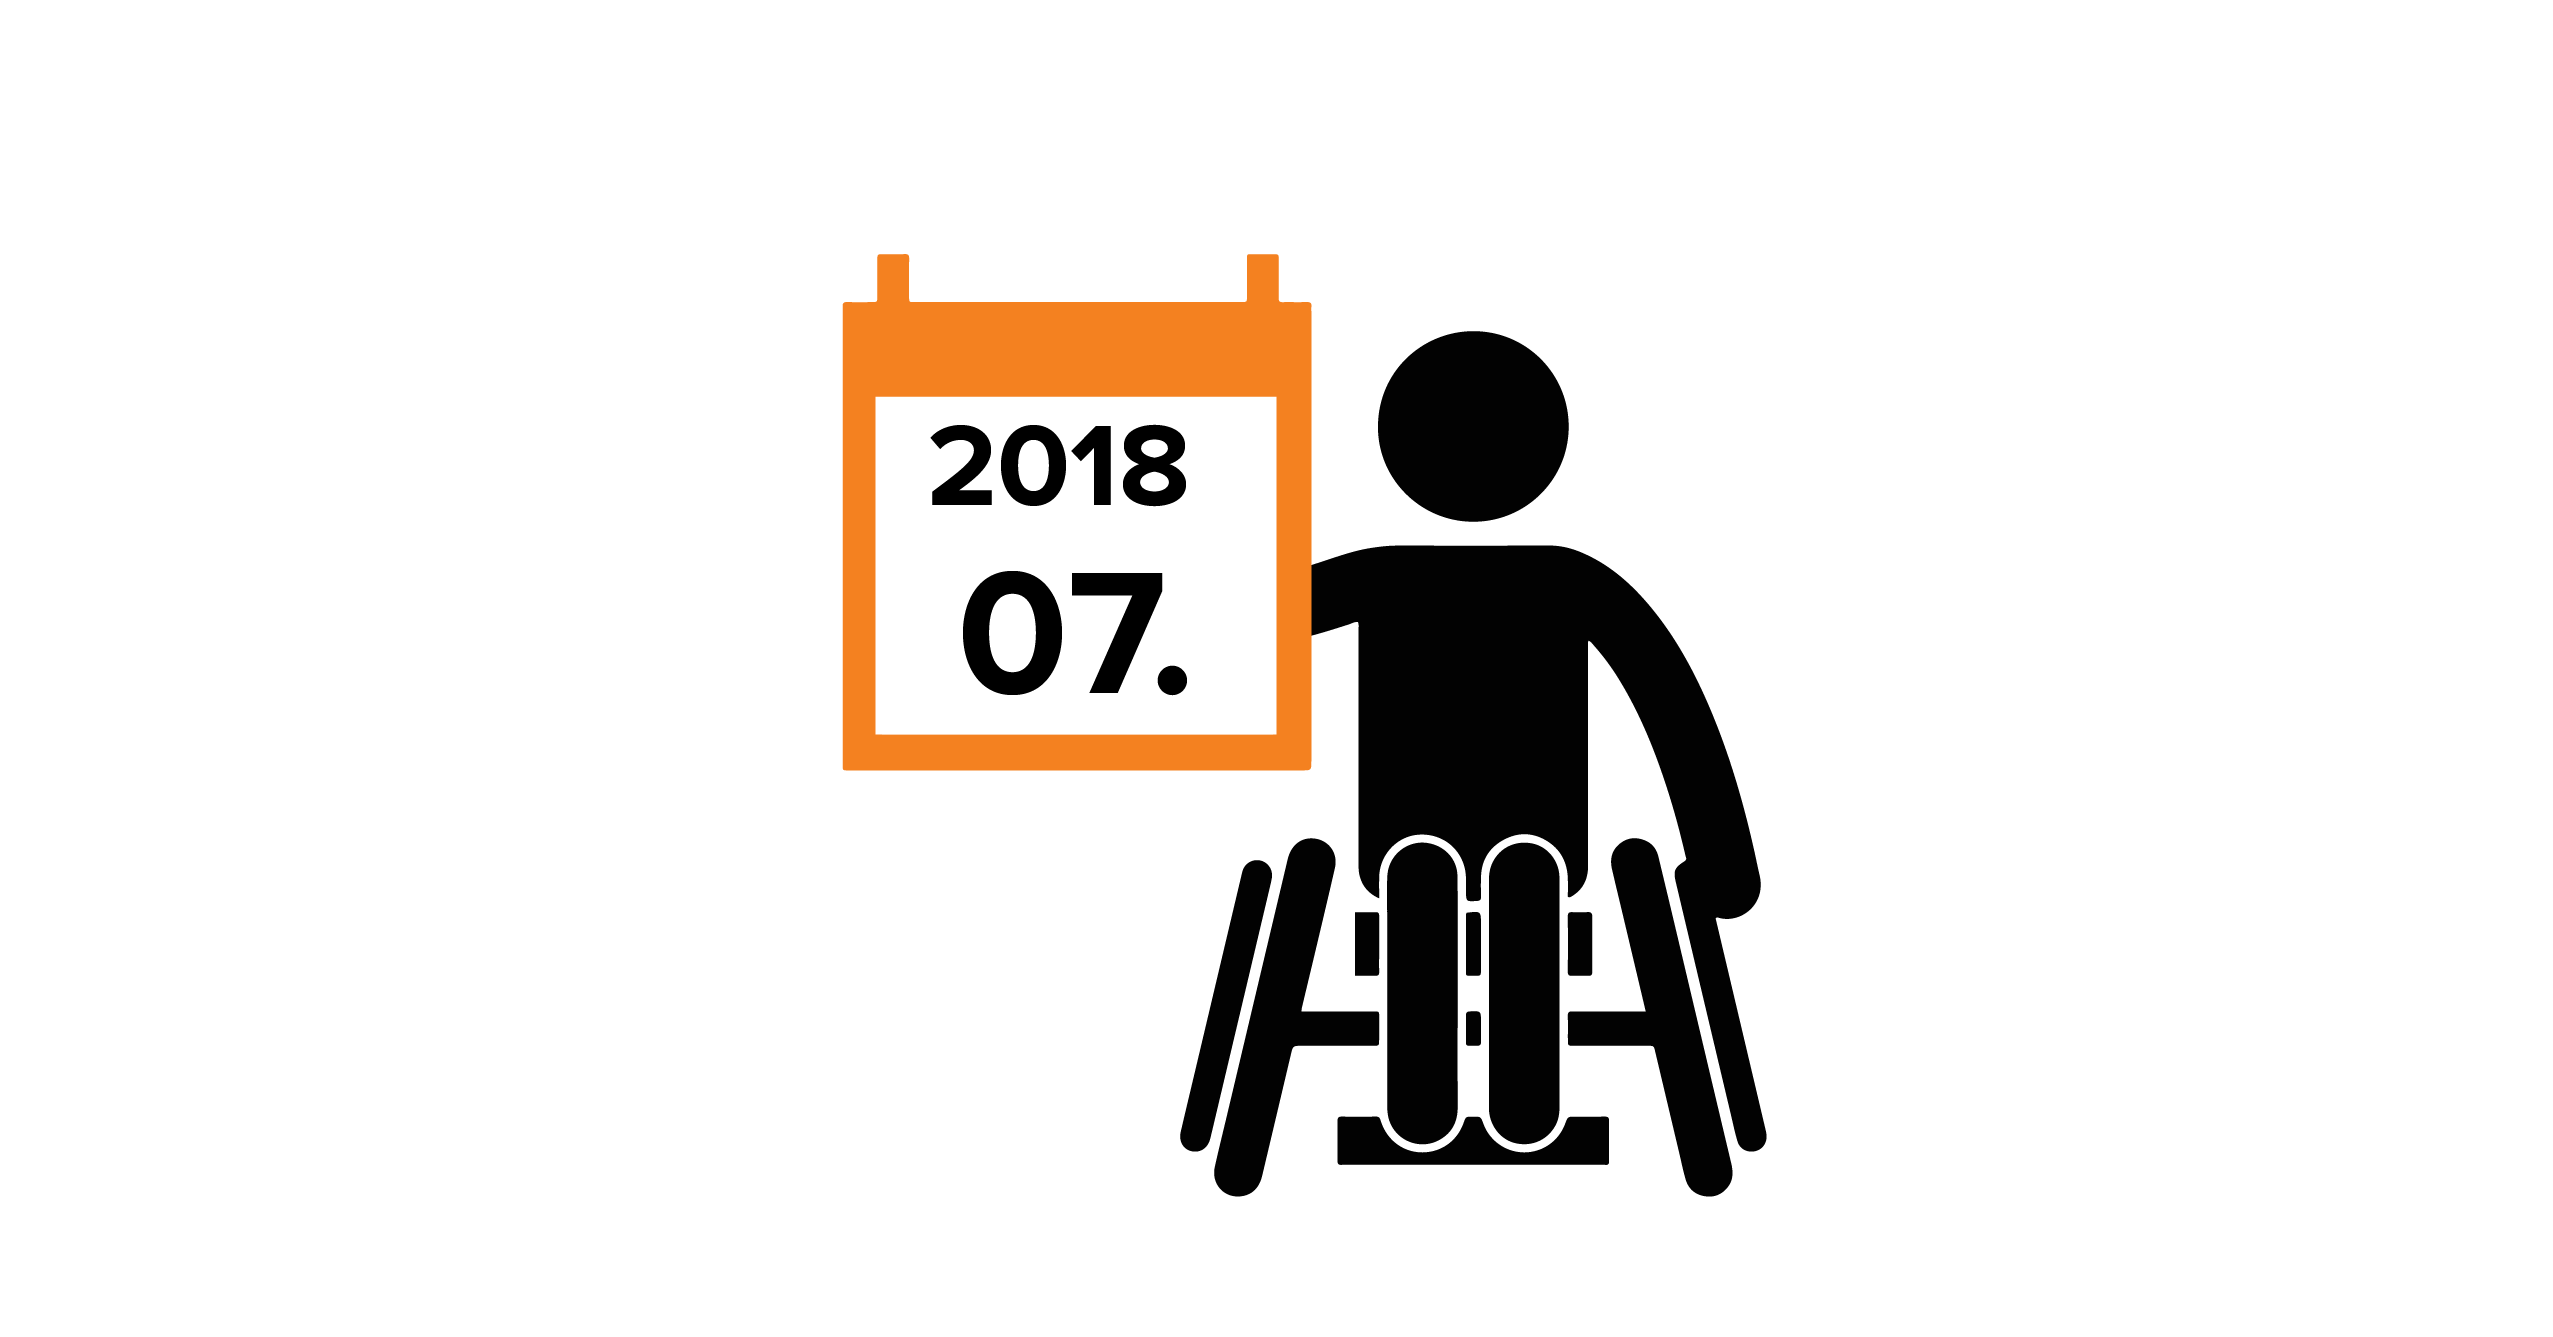 Na grafice człowiek na wózku, trzymający kalendarz z datą 07.2018